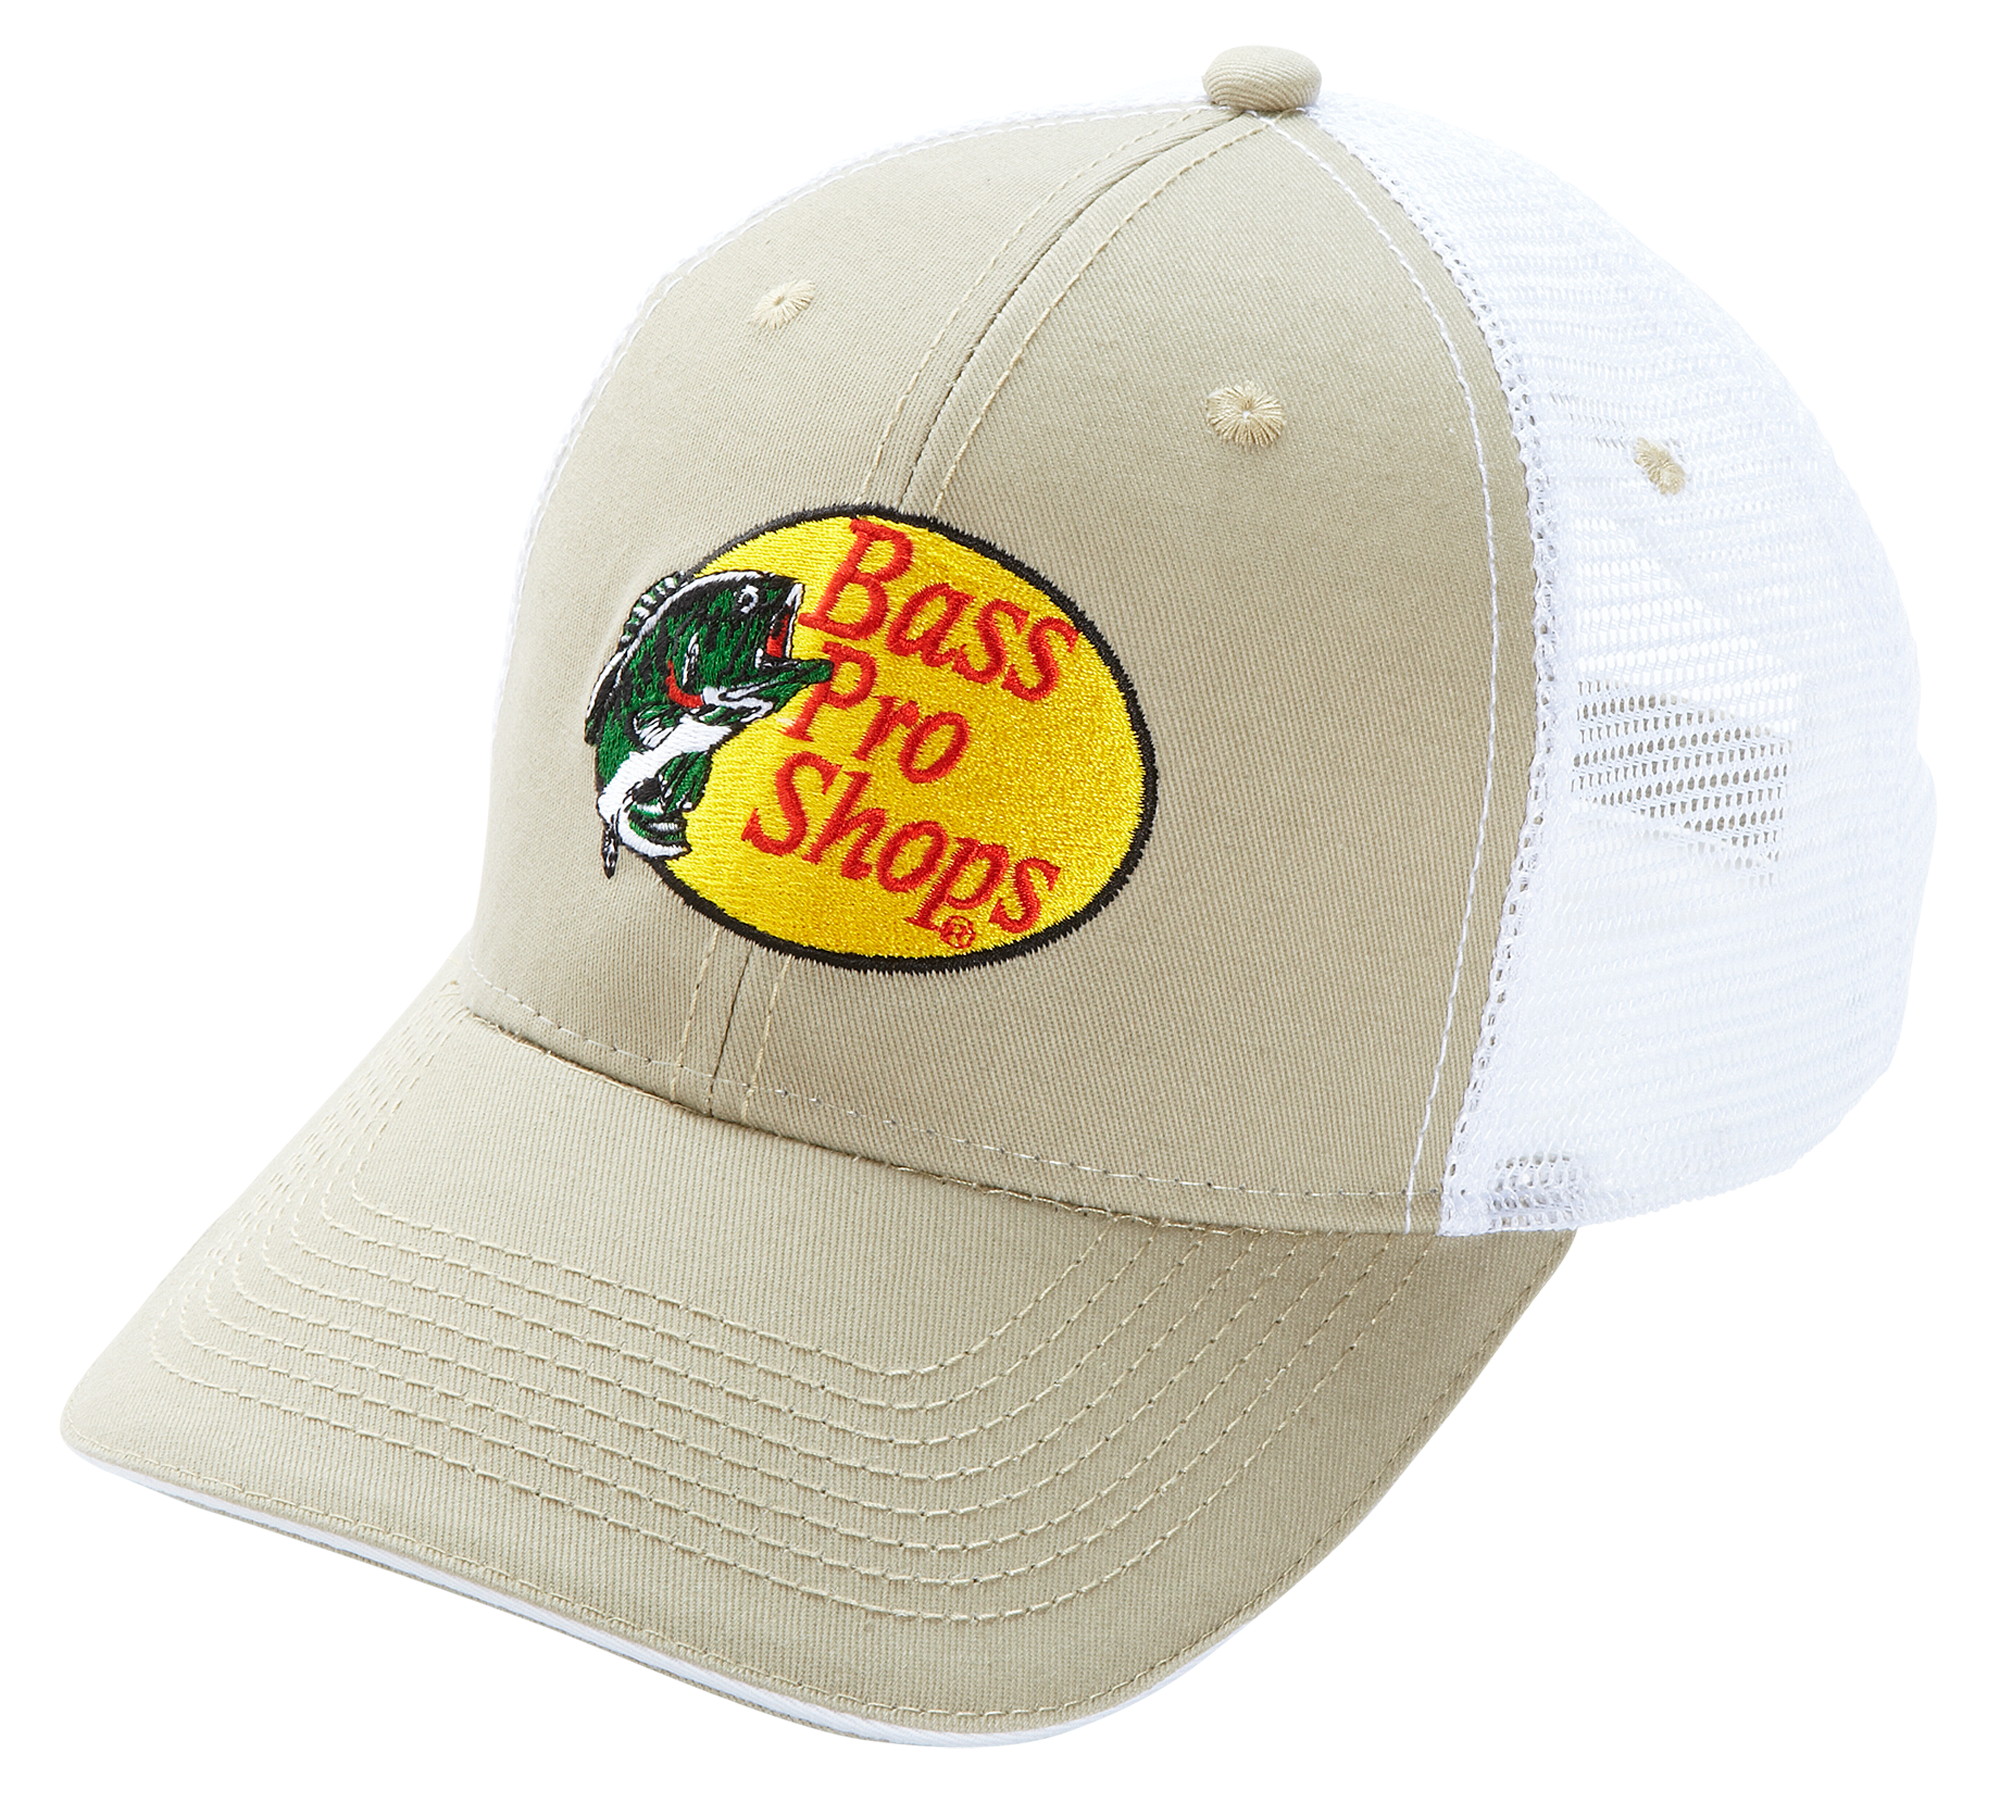 Bass Pro Shop Cap Rhinestone Cap Customize Cap Mesh Caps Ladies